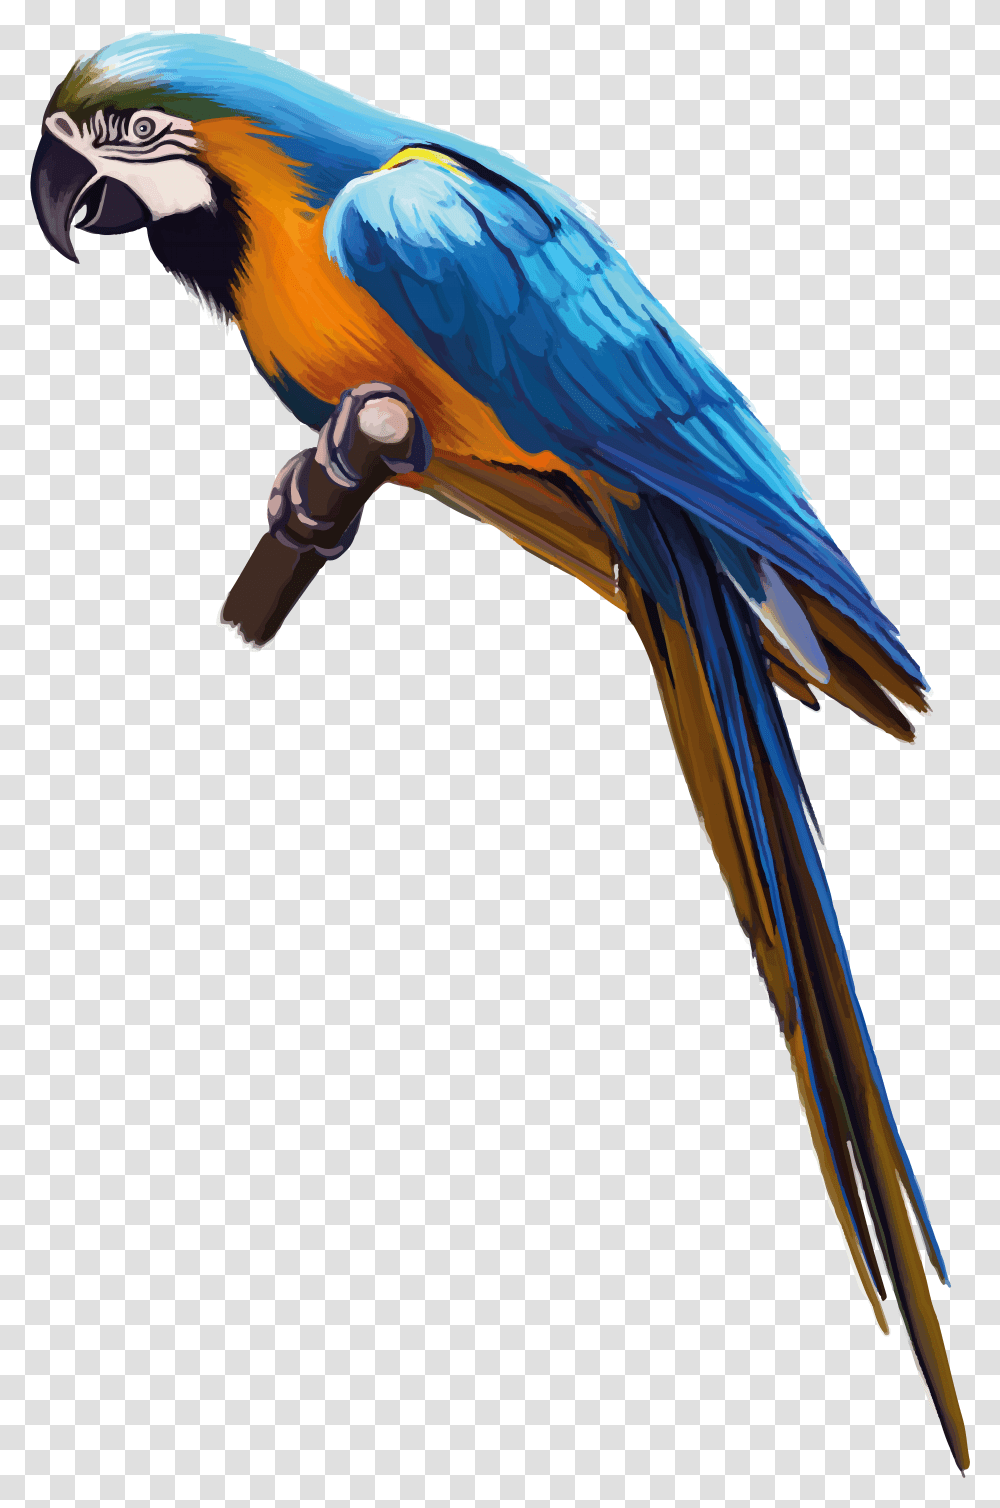 Parrot, Animals, Macaw, Bird, Construction Crane Transparent Png